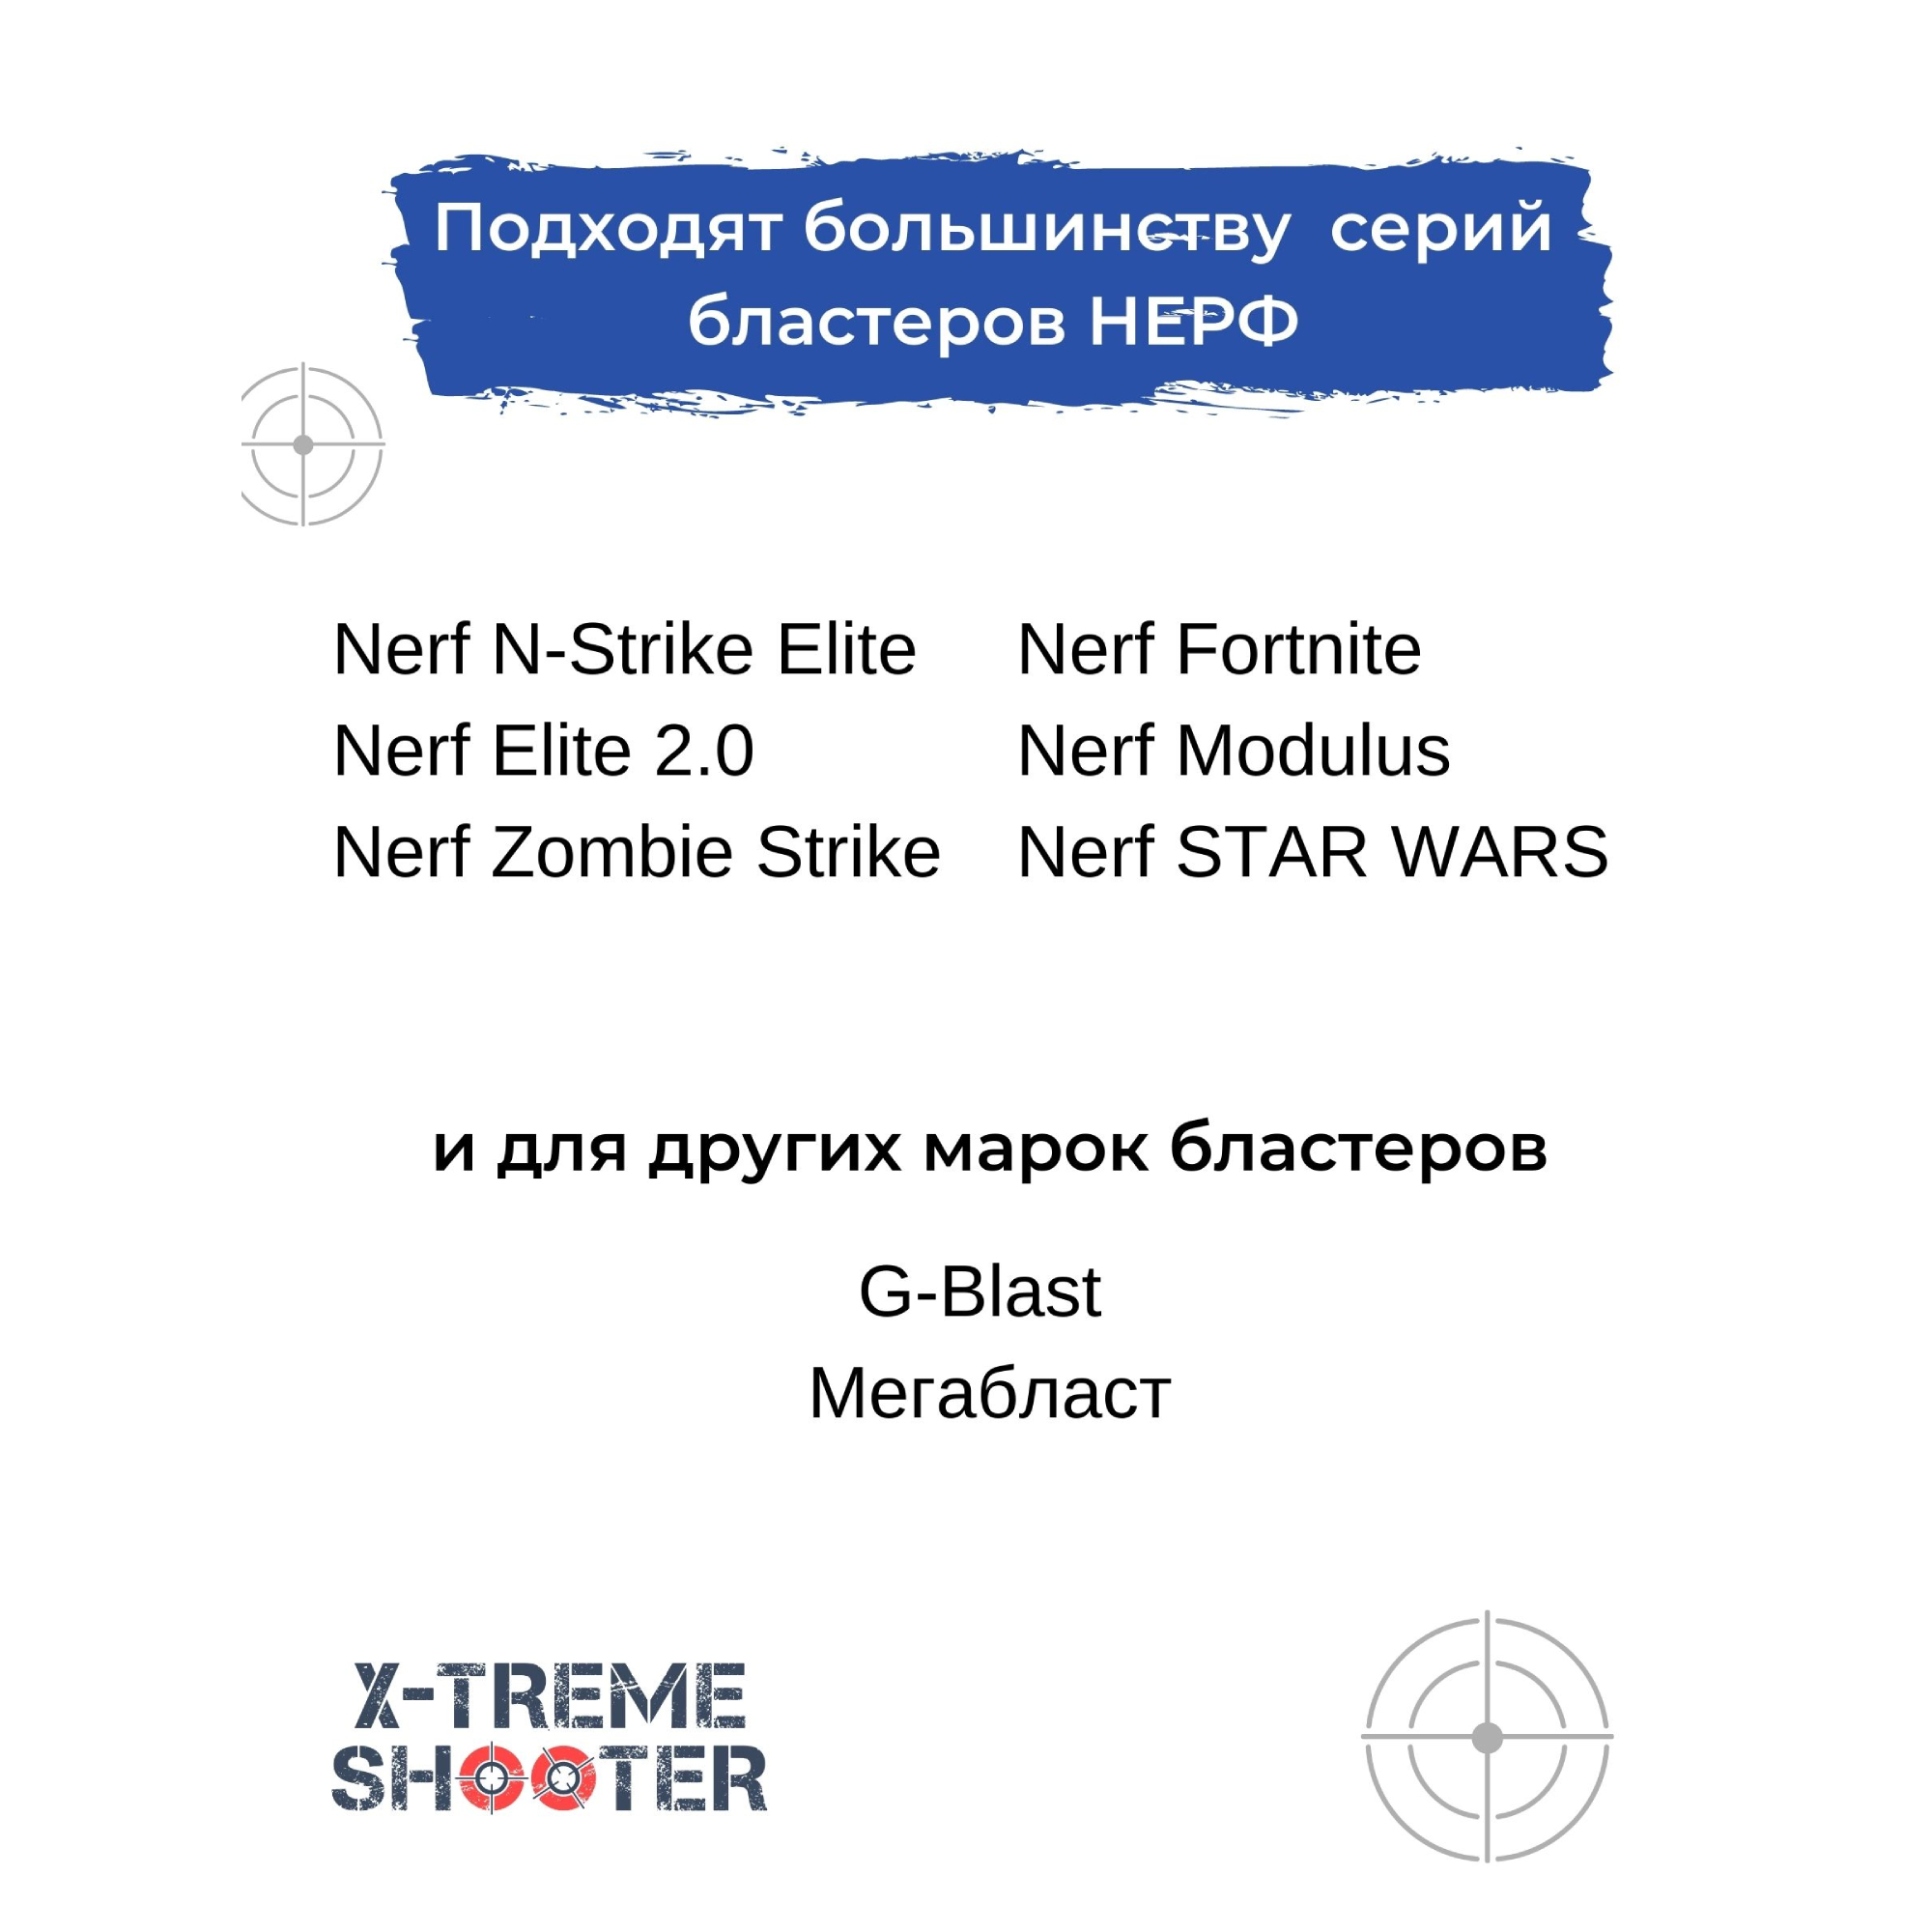 Патроны мягкие X-Treme Shooter с присосками пули пульки стрелы для бластера Nerf пистолета Нерф 30 шт - фото 8